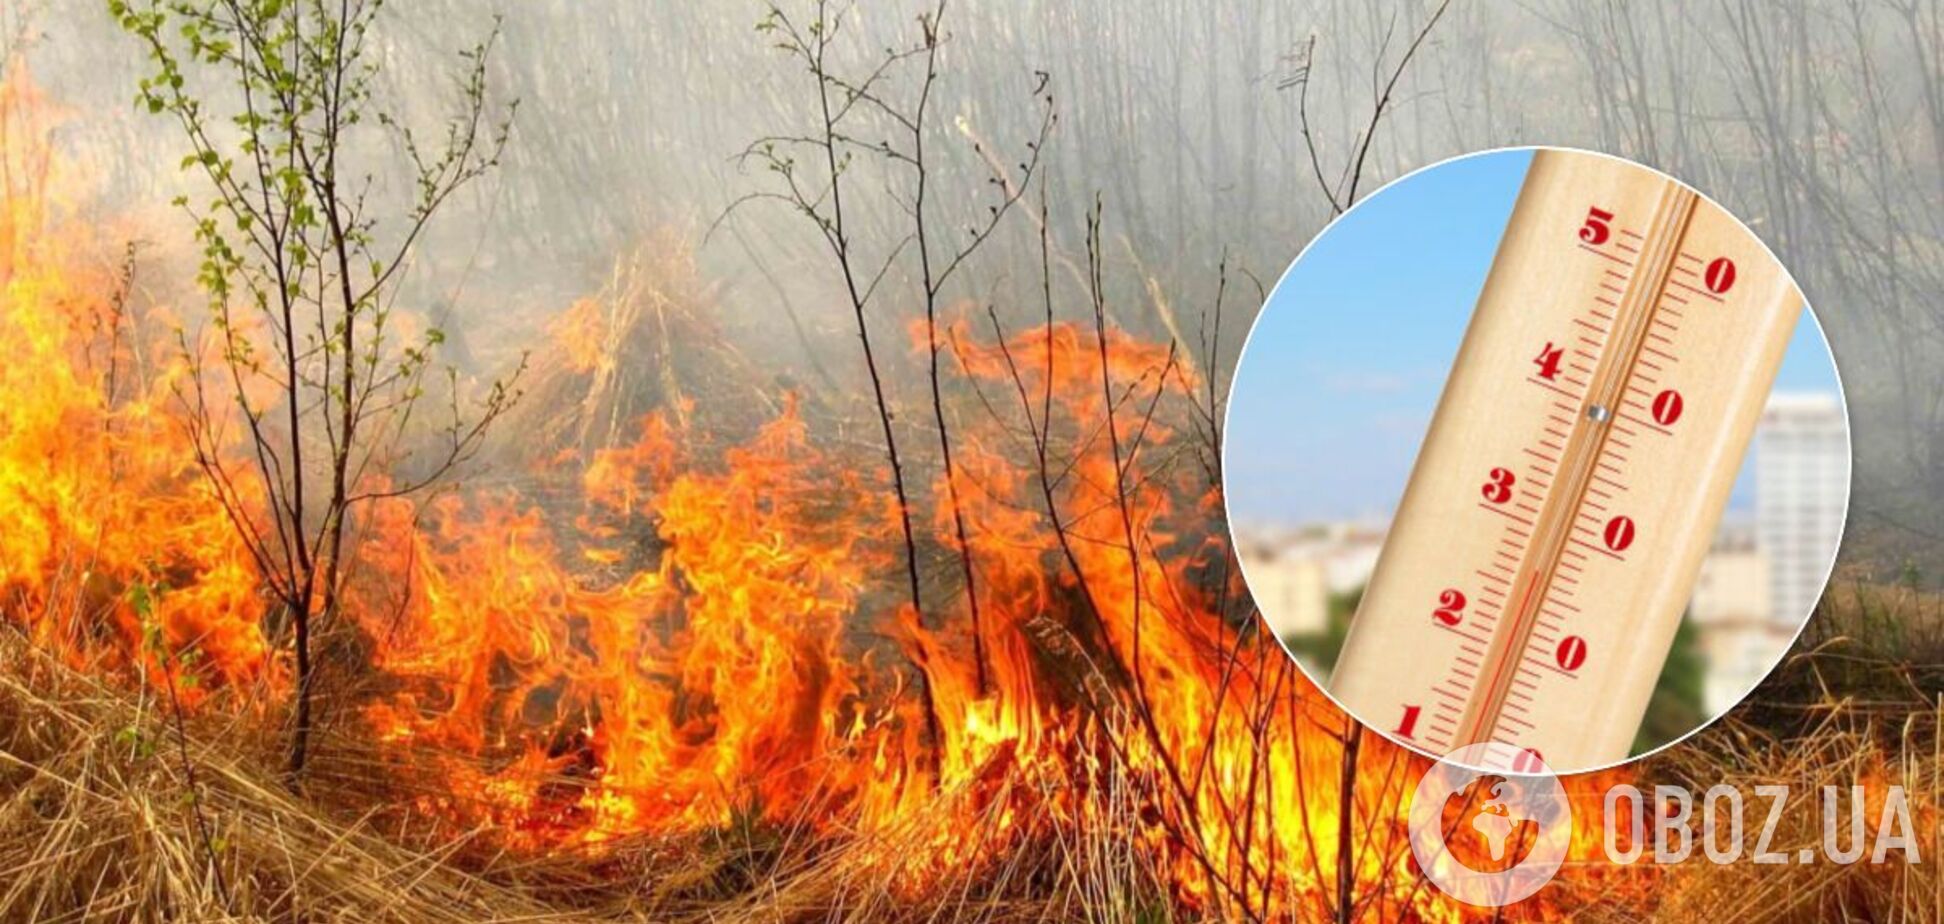 Украинцев предупредили о пожарной опасности: какие регионы могут пострадать